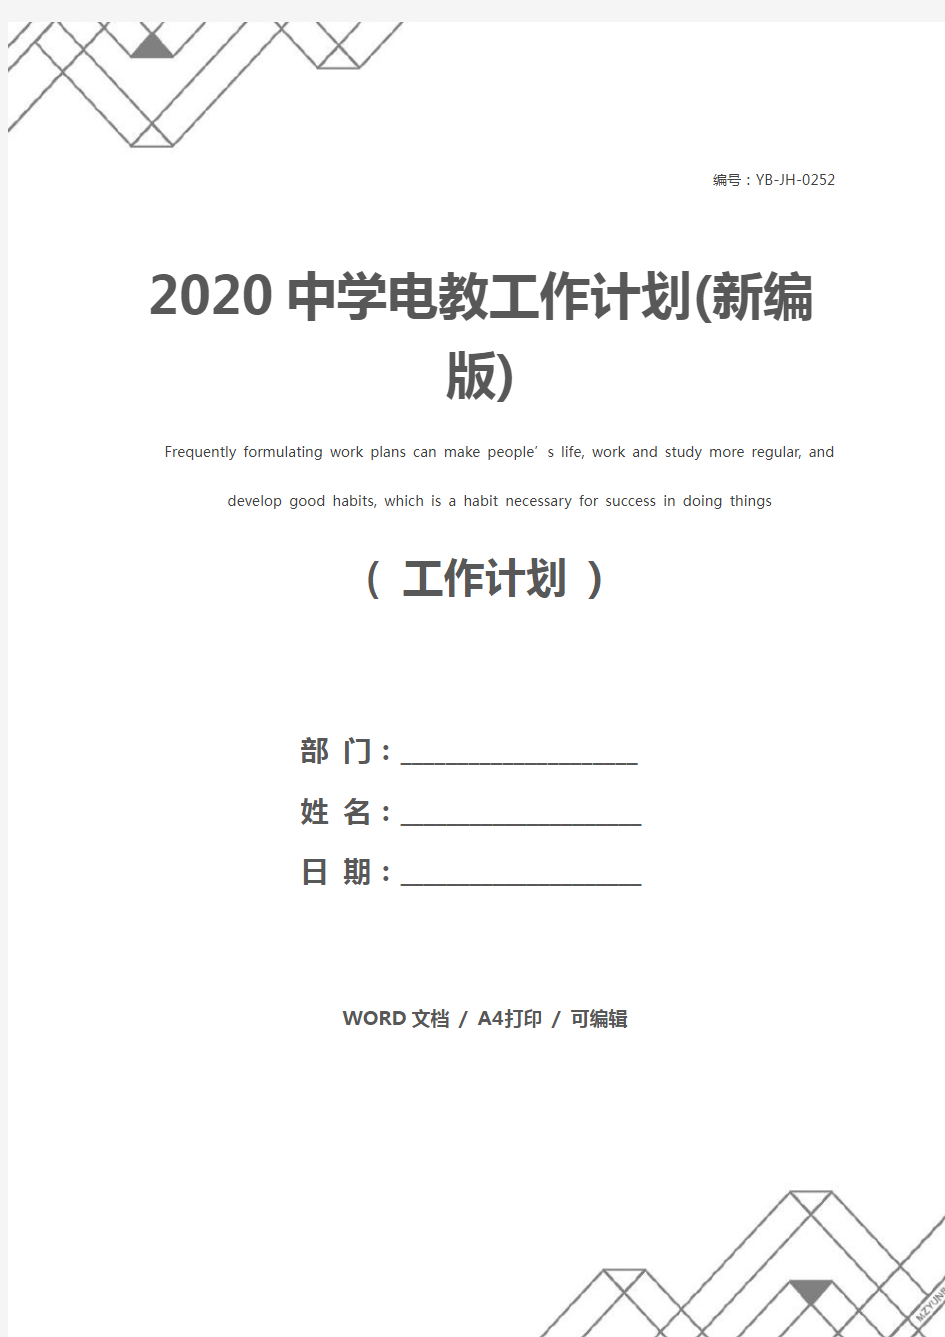 2020中学电教工作计划(新编版)